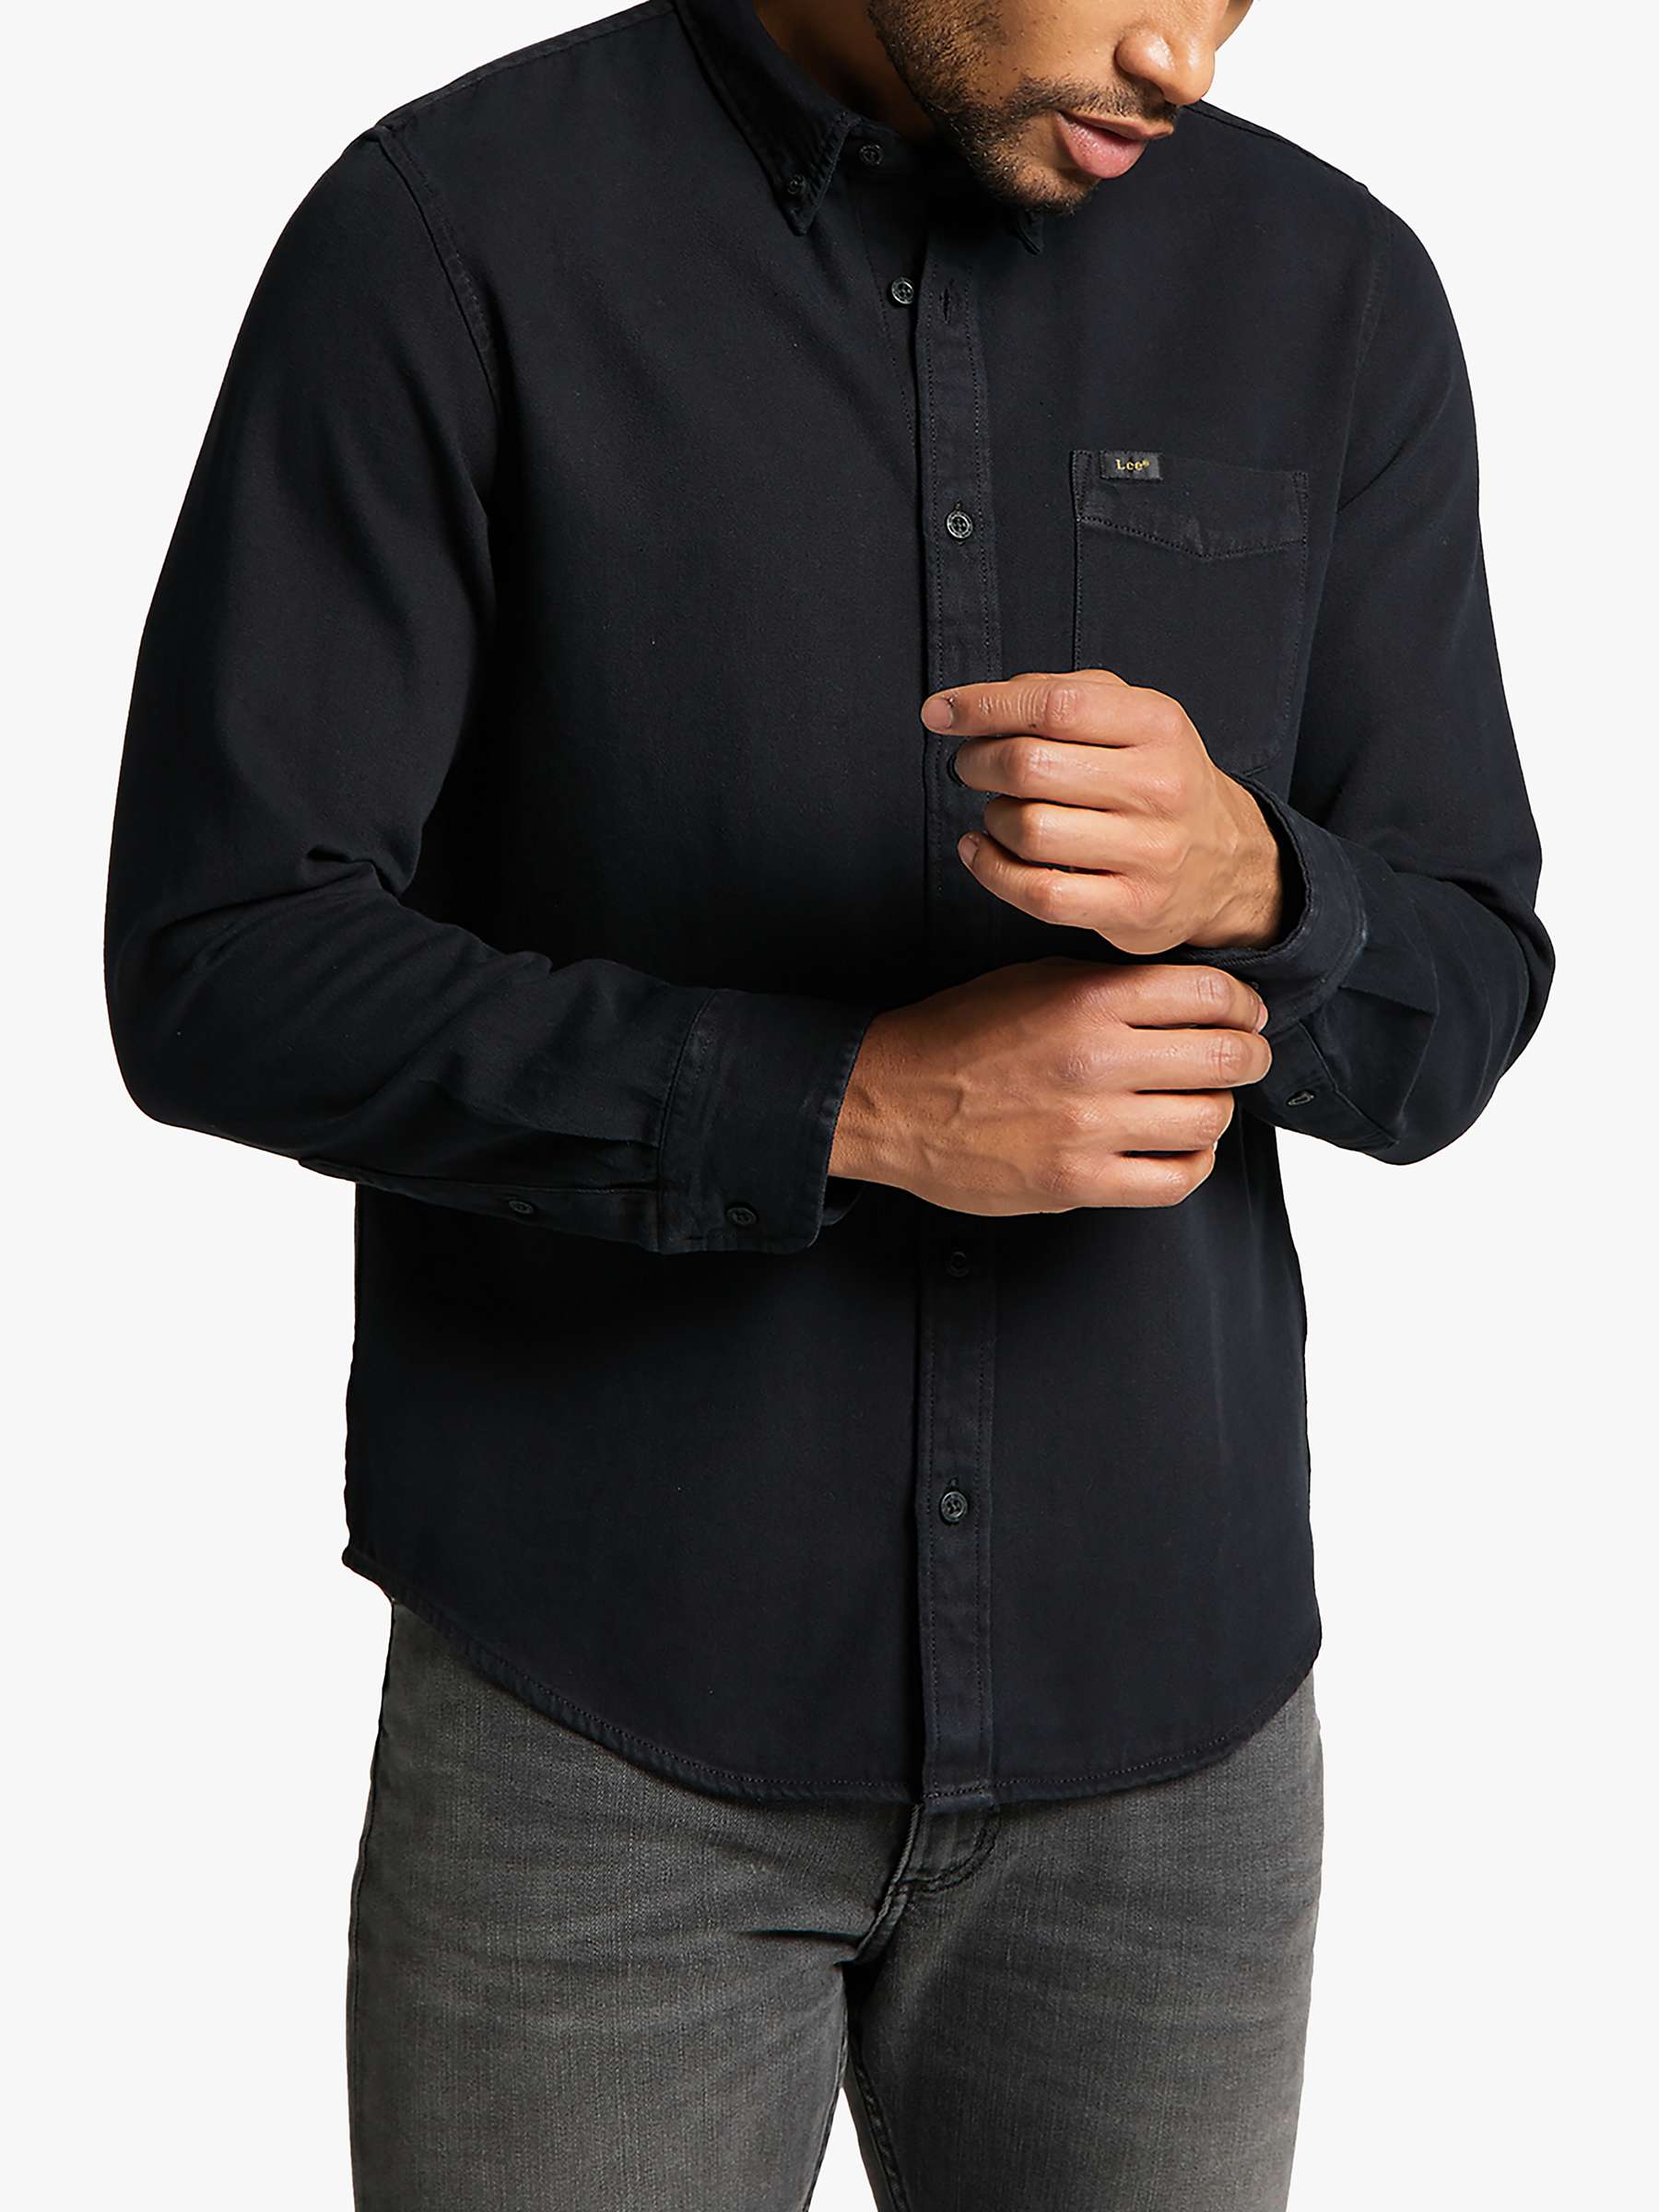 Buy Lee Cotton Regular Fit Shirt, Black Online at johnlewis.com